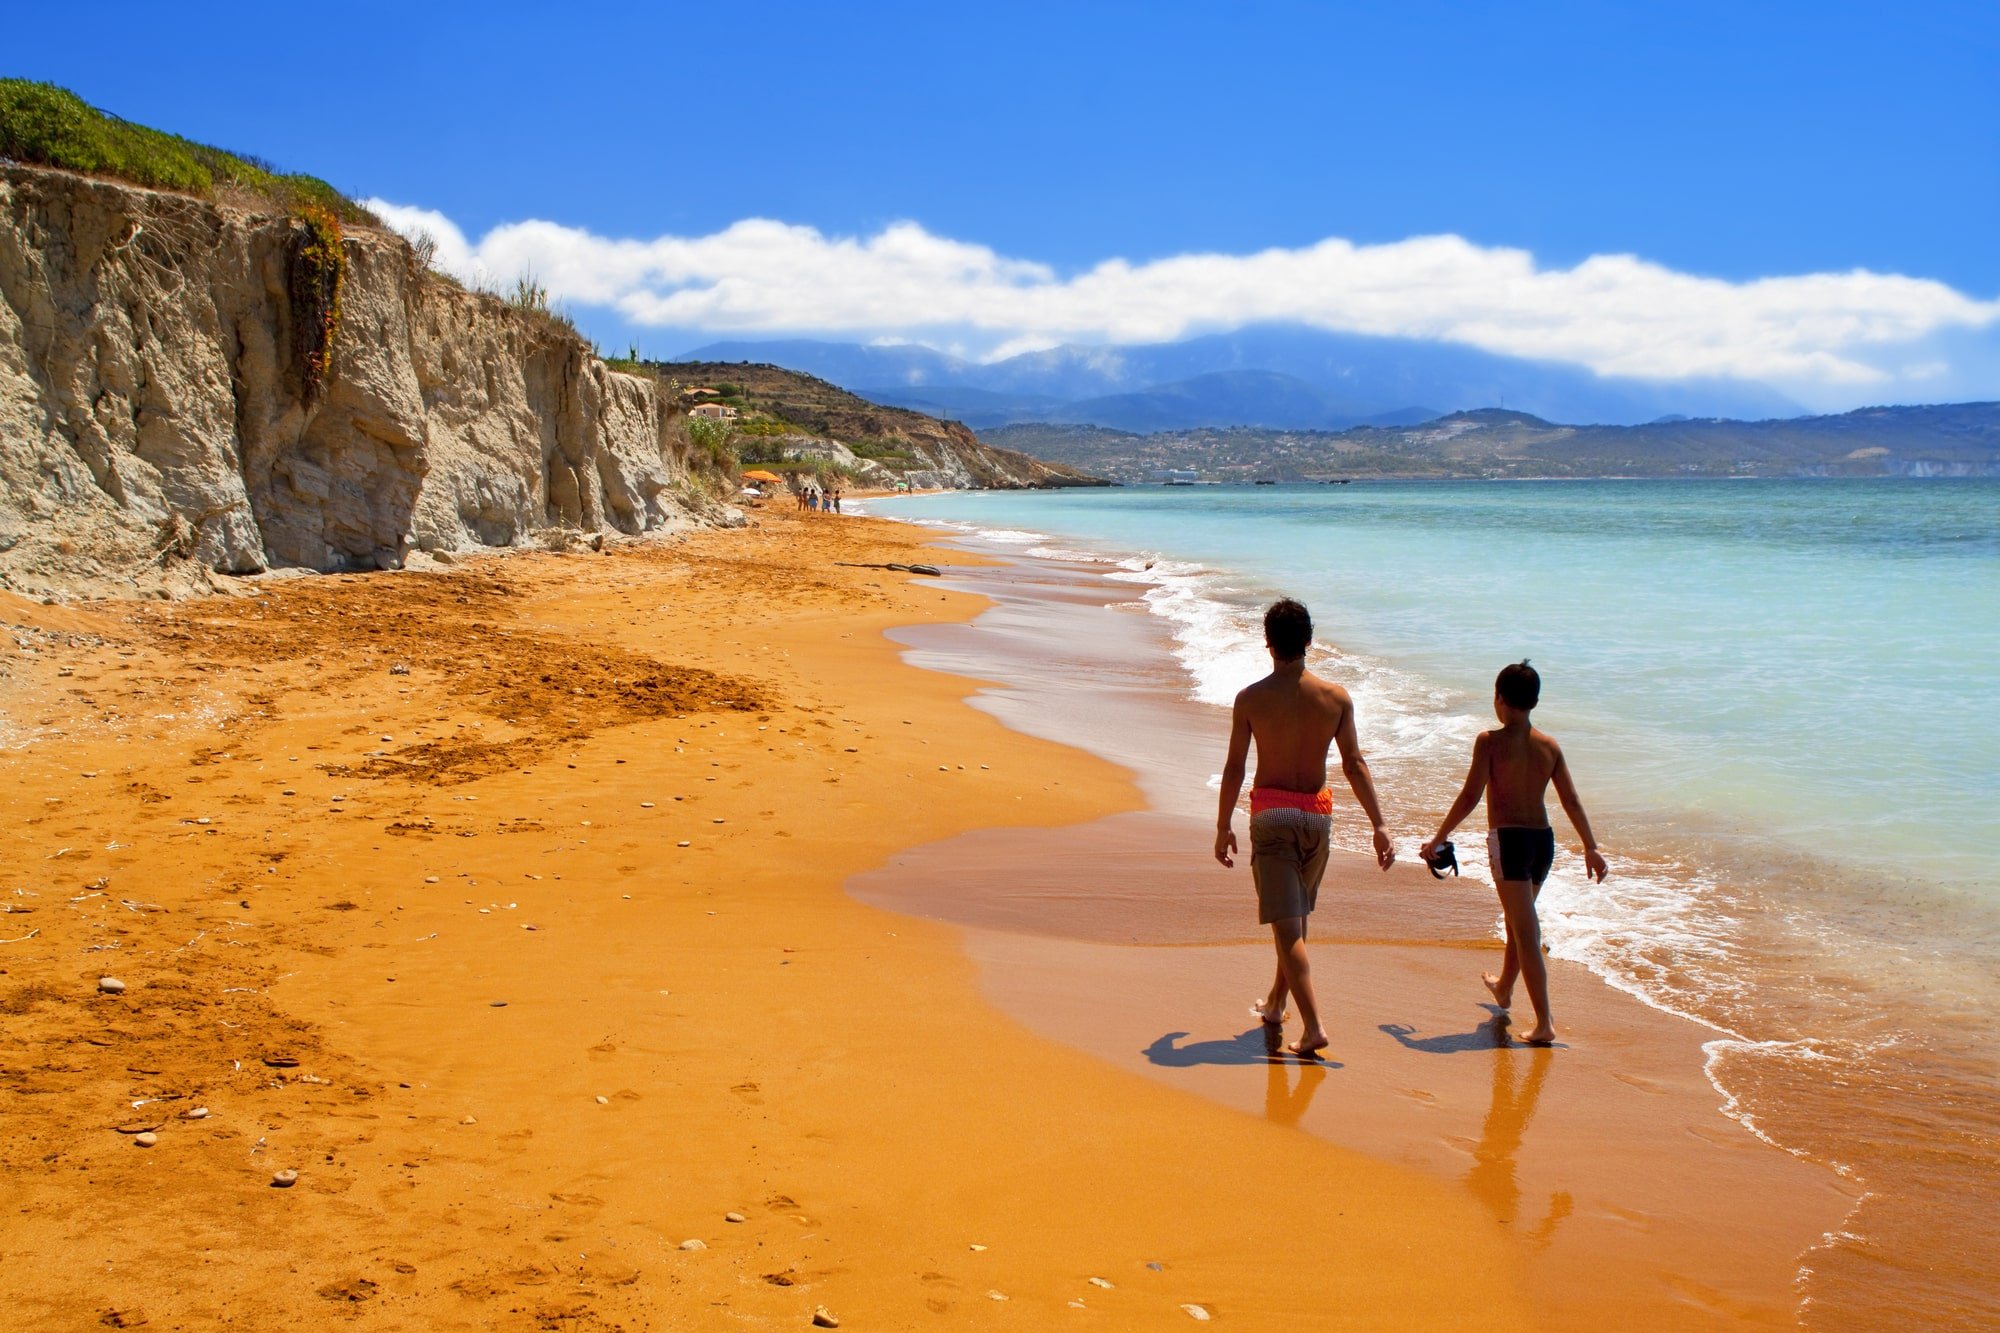 Beliggende mellem bjergene i Agia Dynati og Kalon Oros, er Myrtos Beach en af ​​de vigtigste og smukkeste seværdigheder på øen. De hvide sten og det krystallinske vand sammen med de grønne klipper